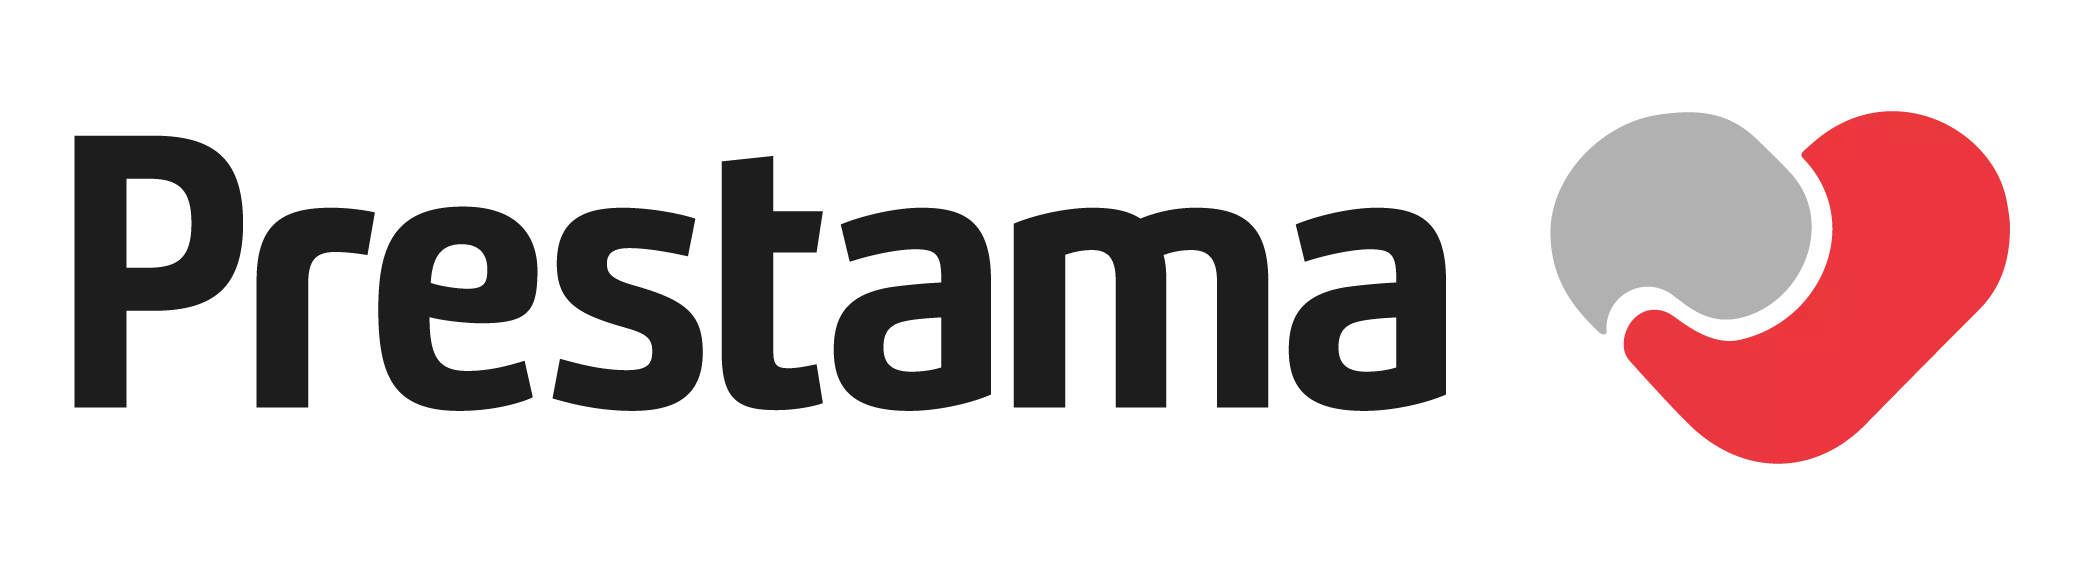 Logo de Prestama empresa uruguaya que otorga préstamos